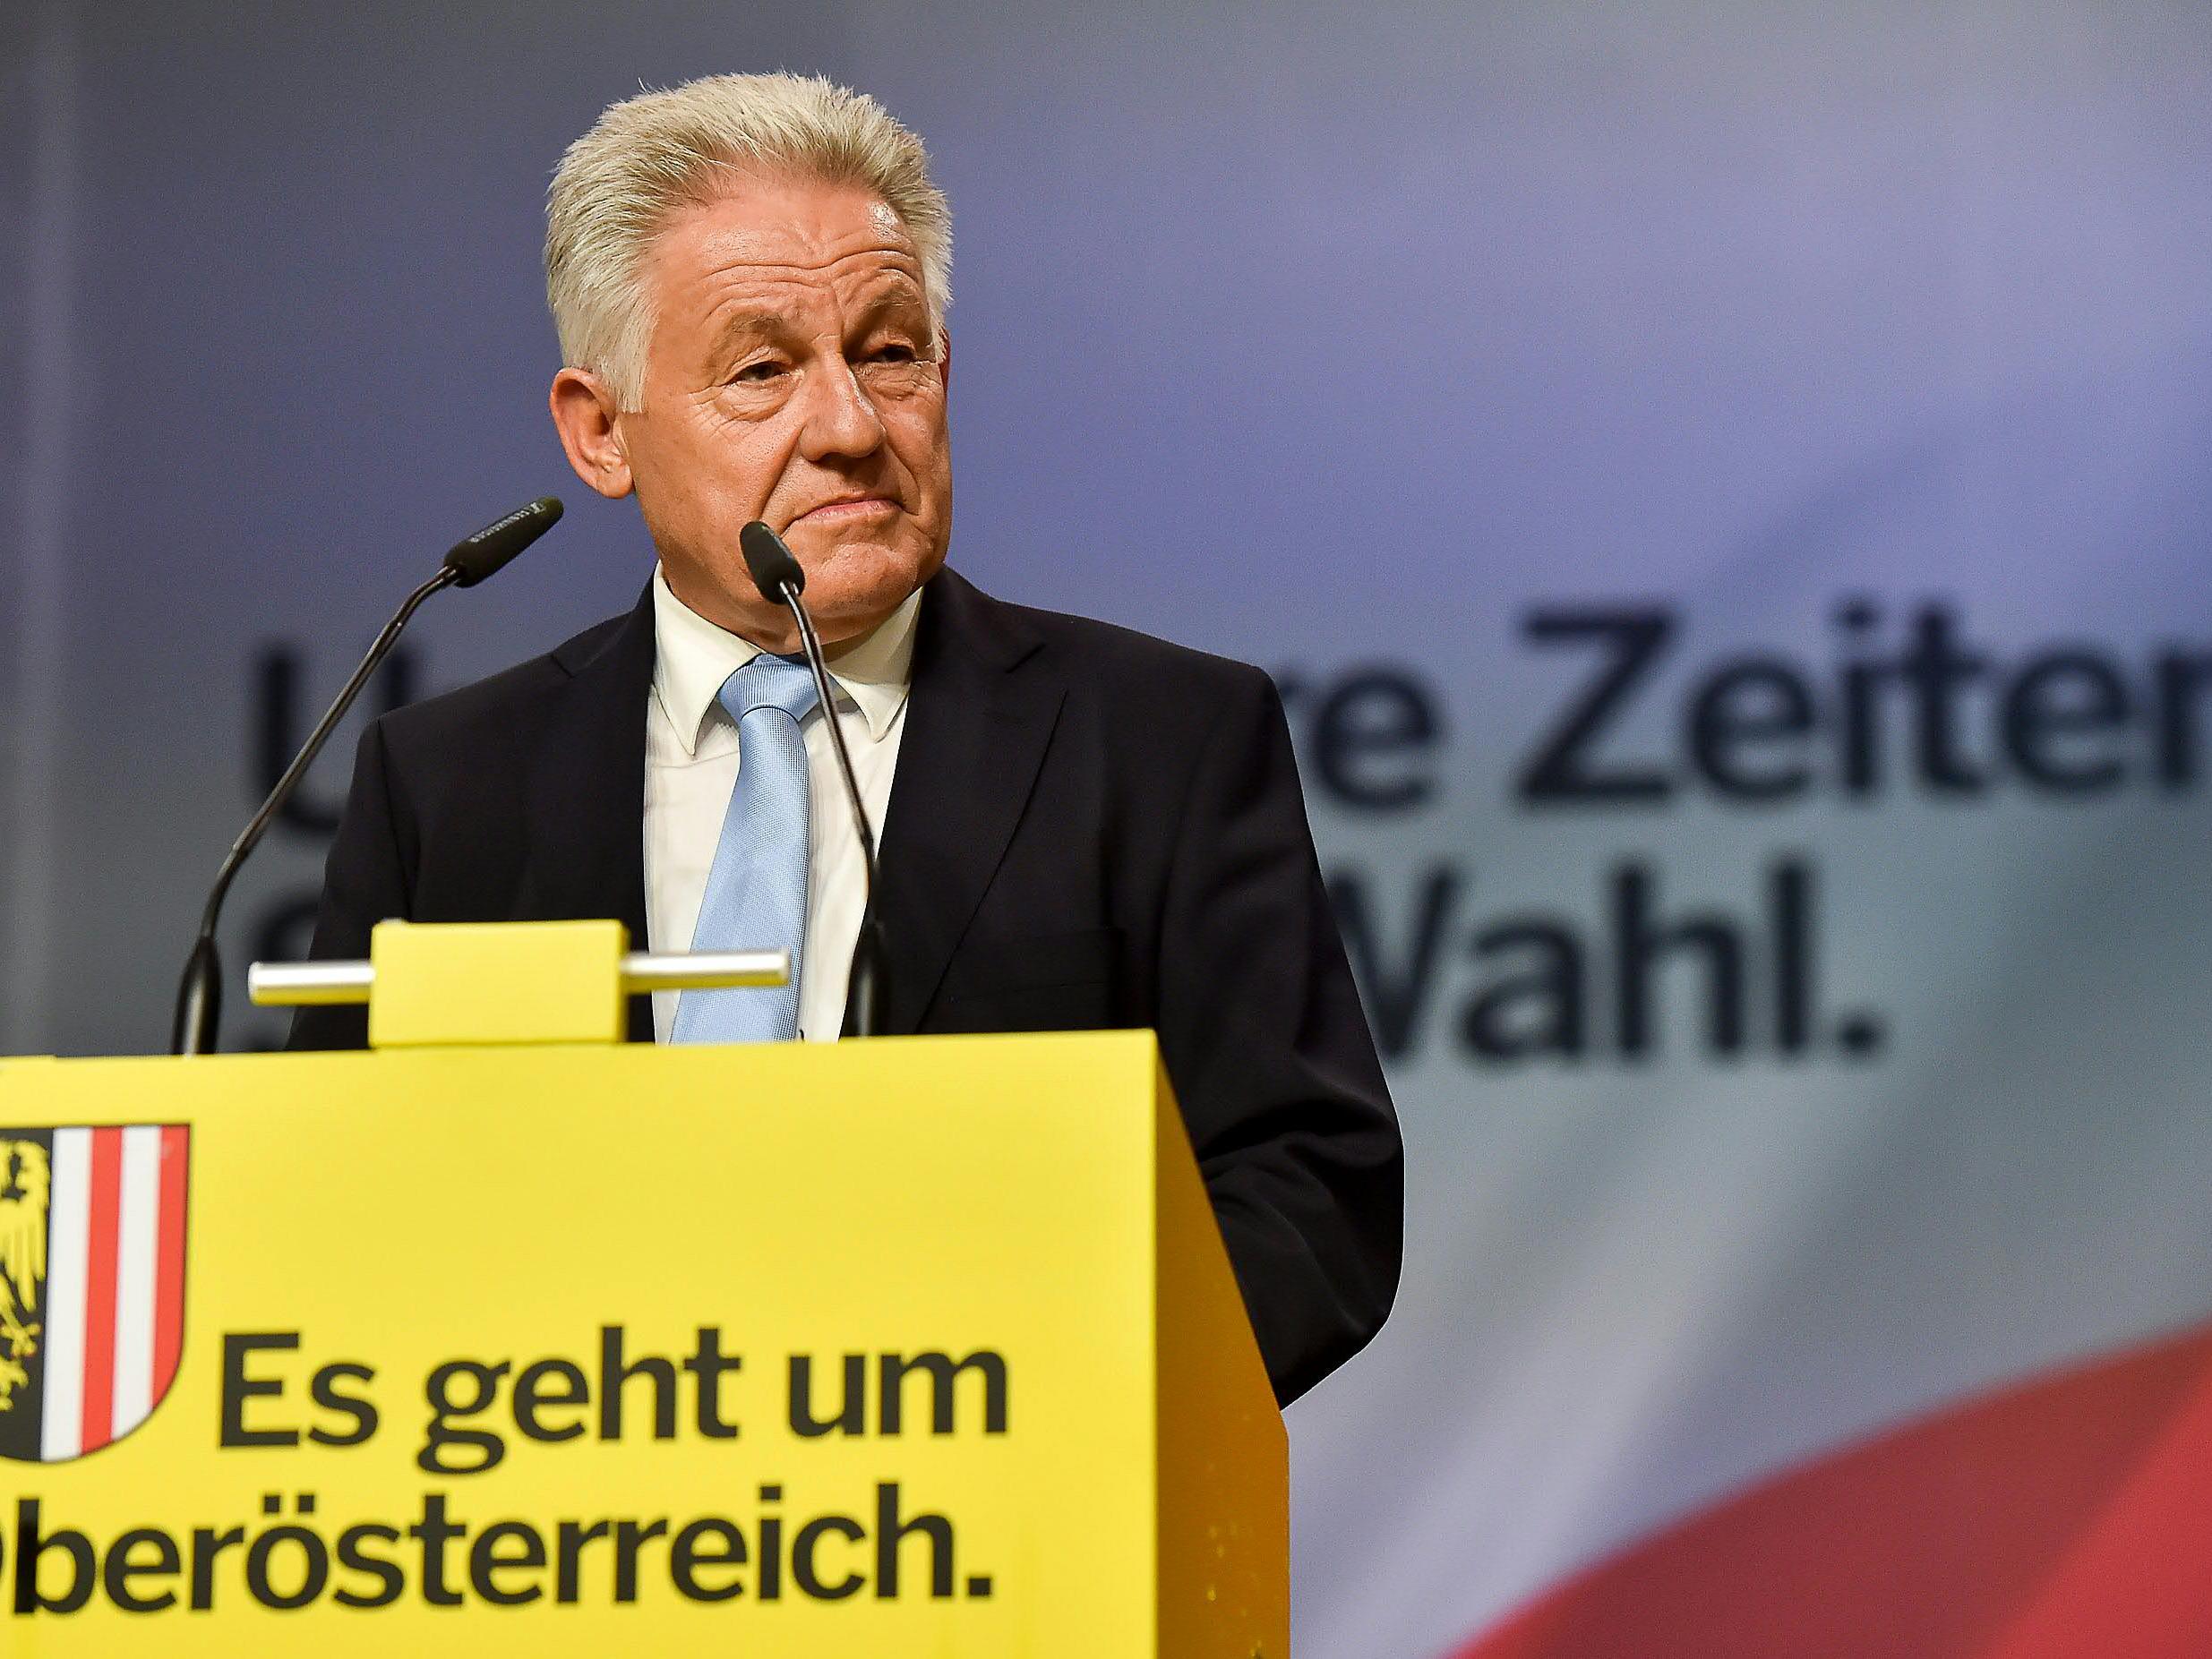 Wir berichten heute LIVE von der Landtagswahl in Oberösterreich 2015.